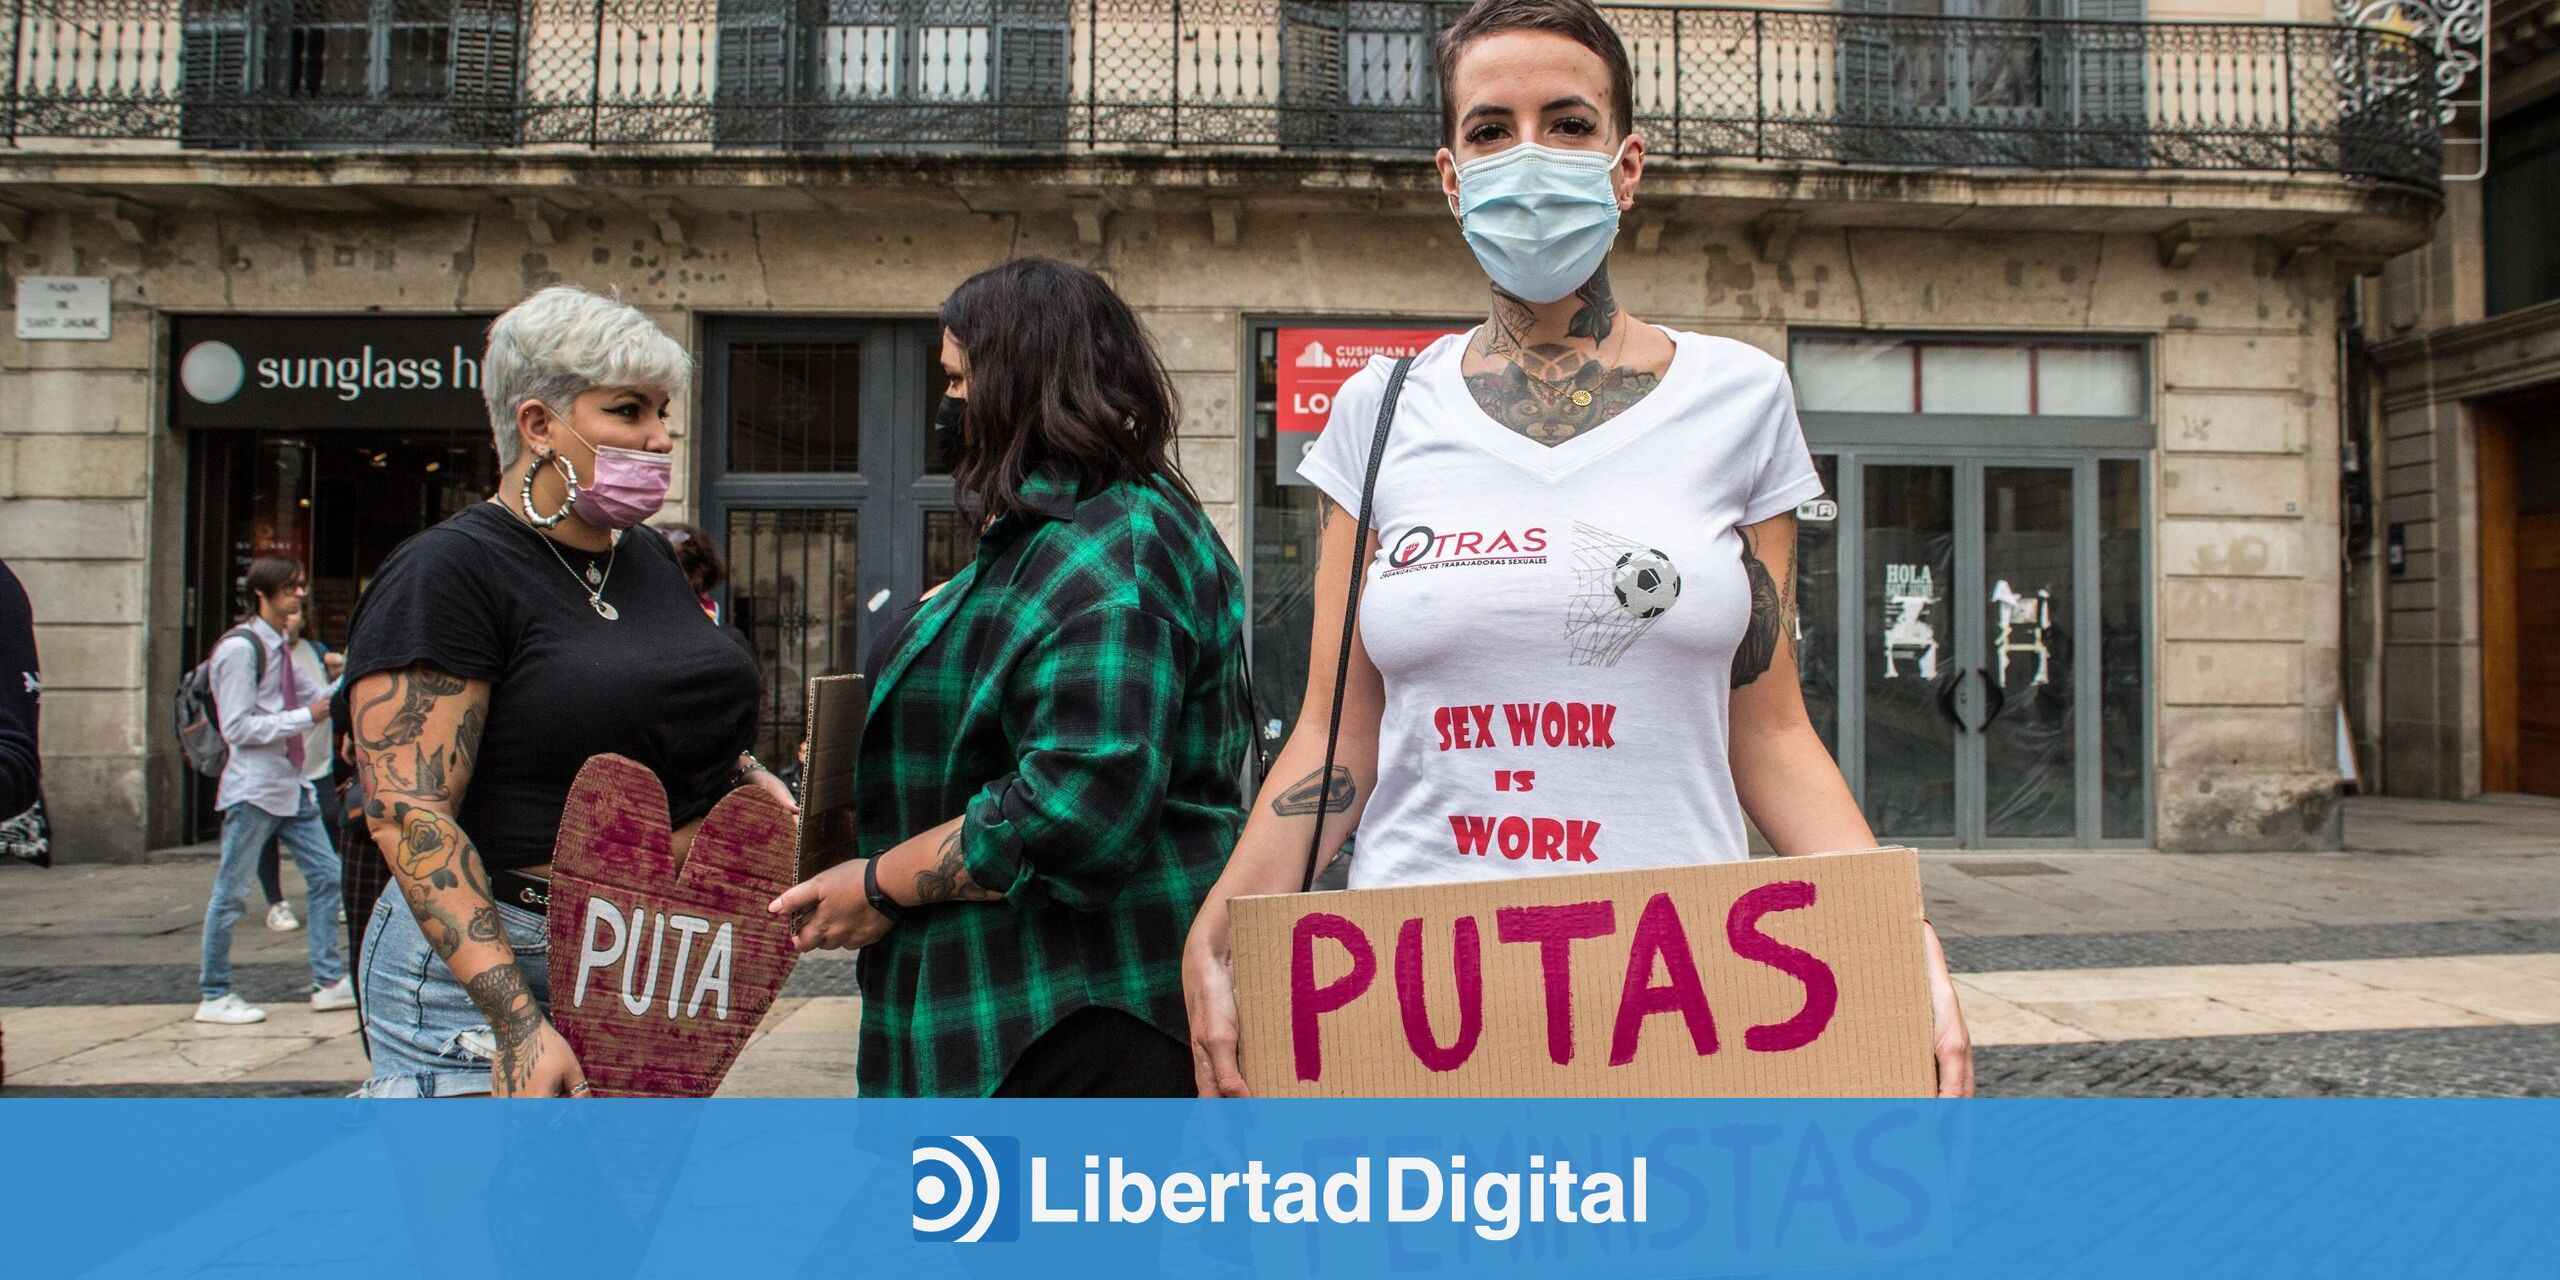 Prostitutas en pie de guerra contra Irene Montero: "Trabajamos de forma  libre y voluntaria" - Libertad Digital